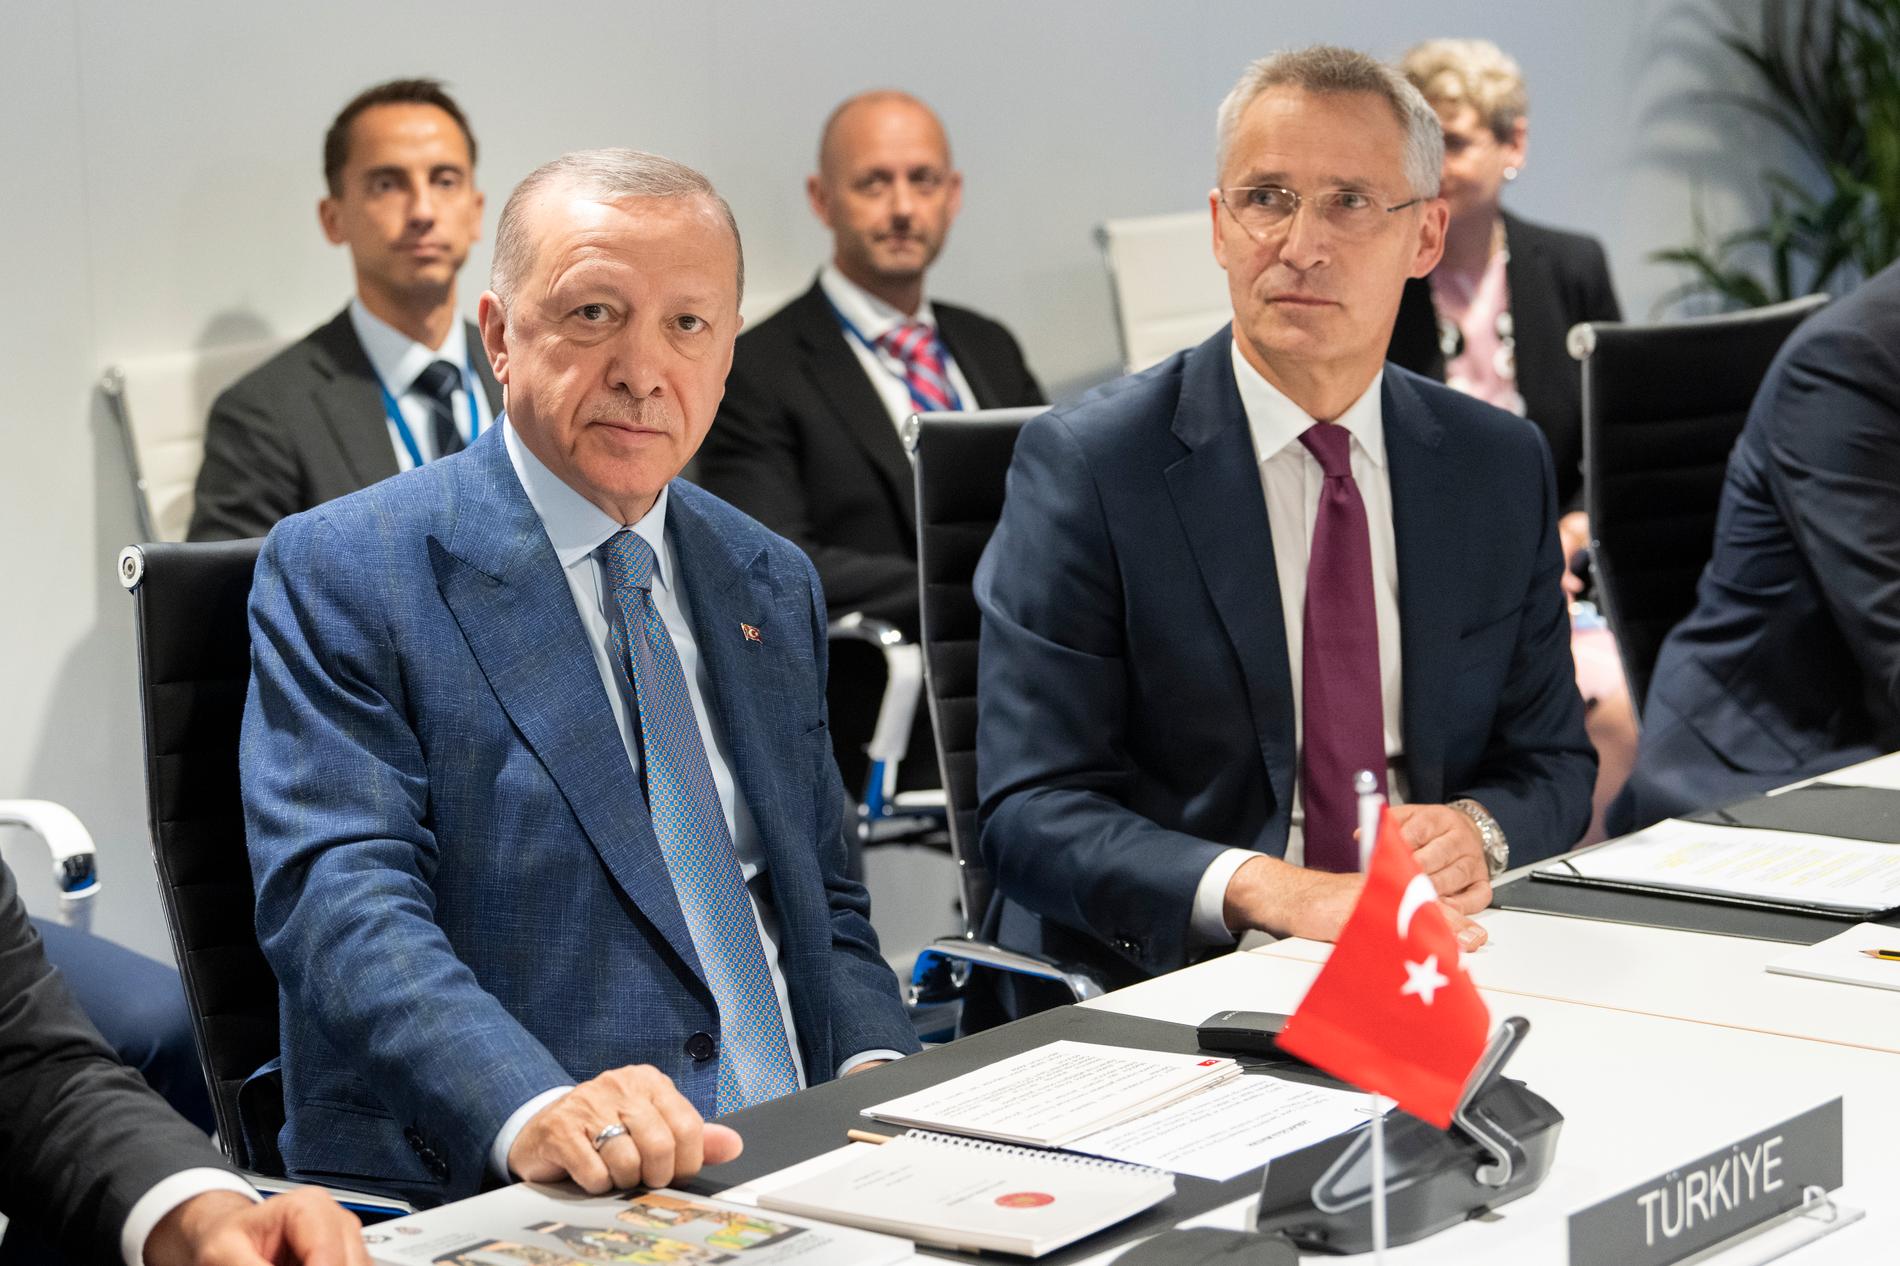 Turkiets president Recep Tayyip Erdogan talar med Natos generalsekreterare Jens Stoltenberg.